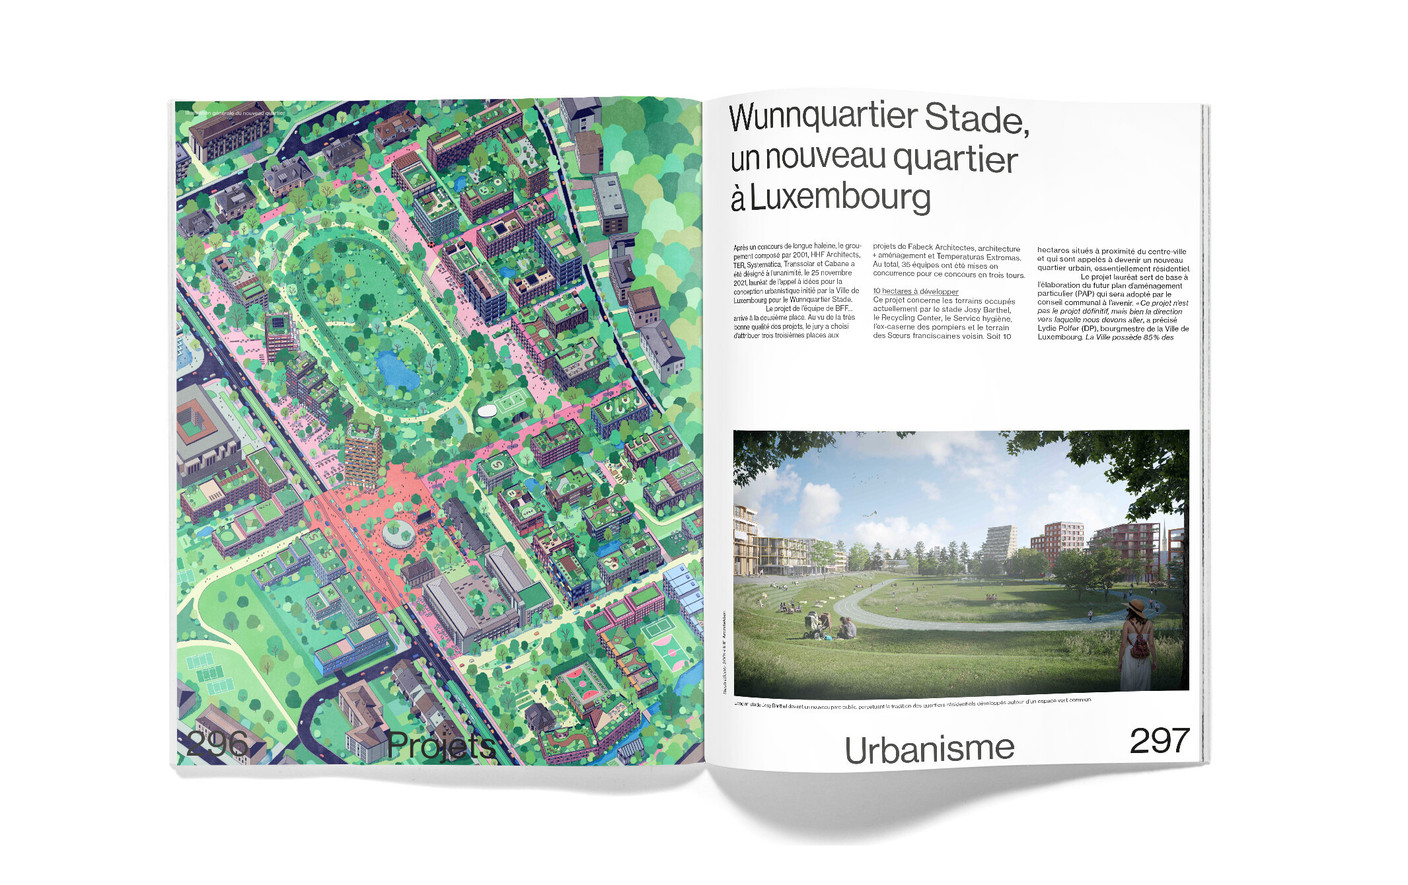 Vue des pages intérieures du hors-série Paperjam Architecture + Real Estate 2023. (Photo: Maison Moderne)